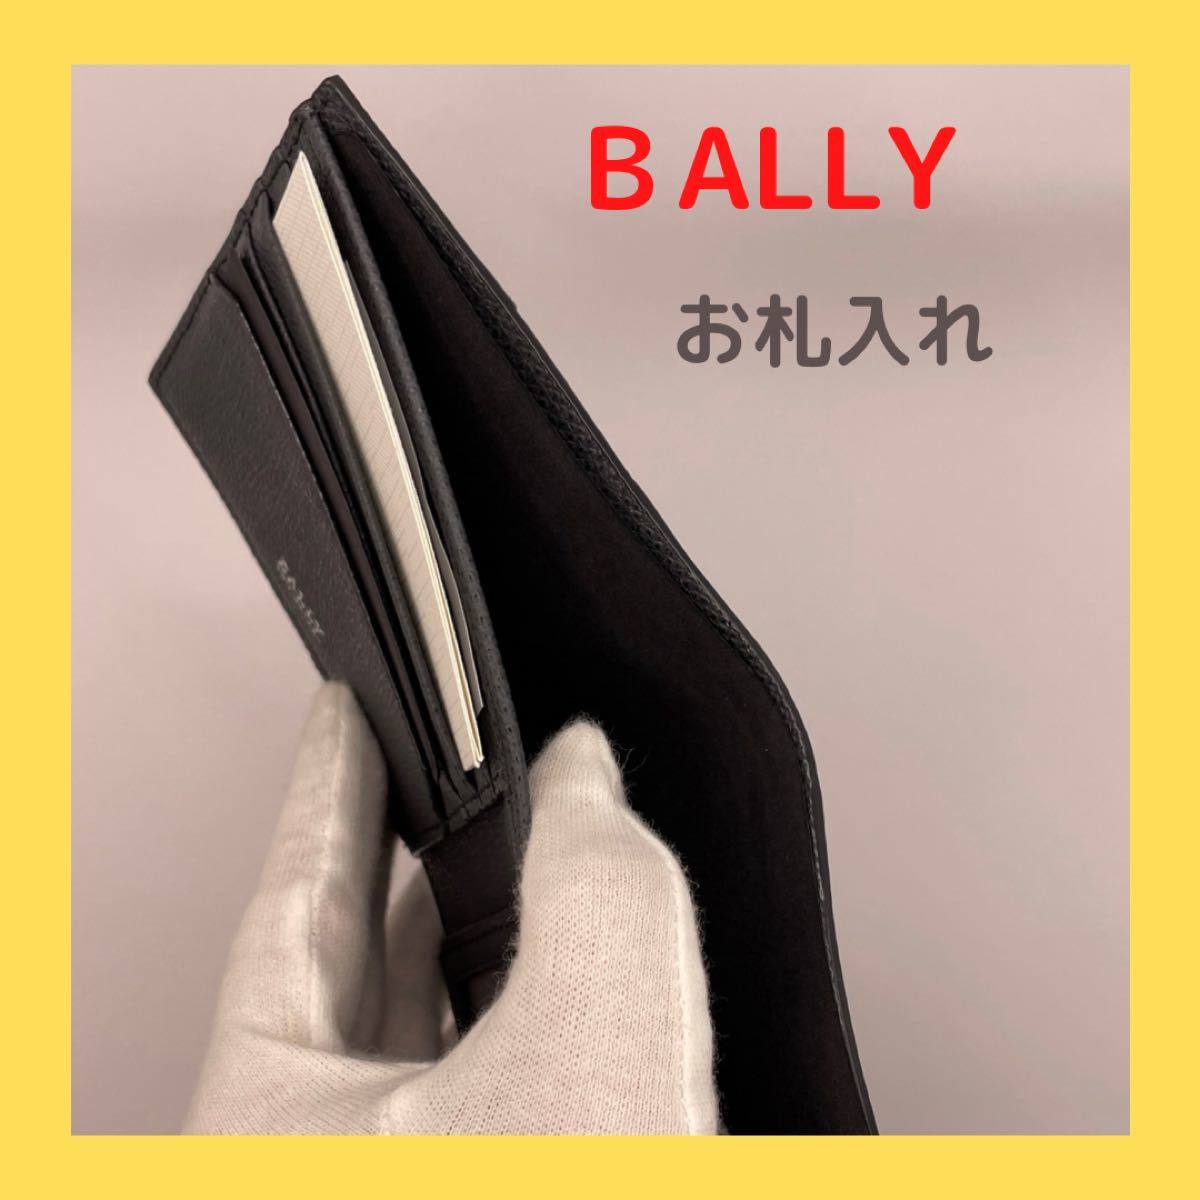 メンズ財布 札入れ BALLY バリー 二つ折財布 ブラック 未使用品 期間限